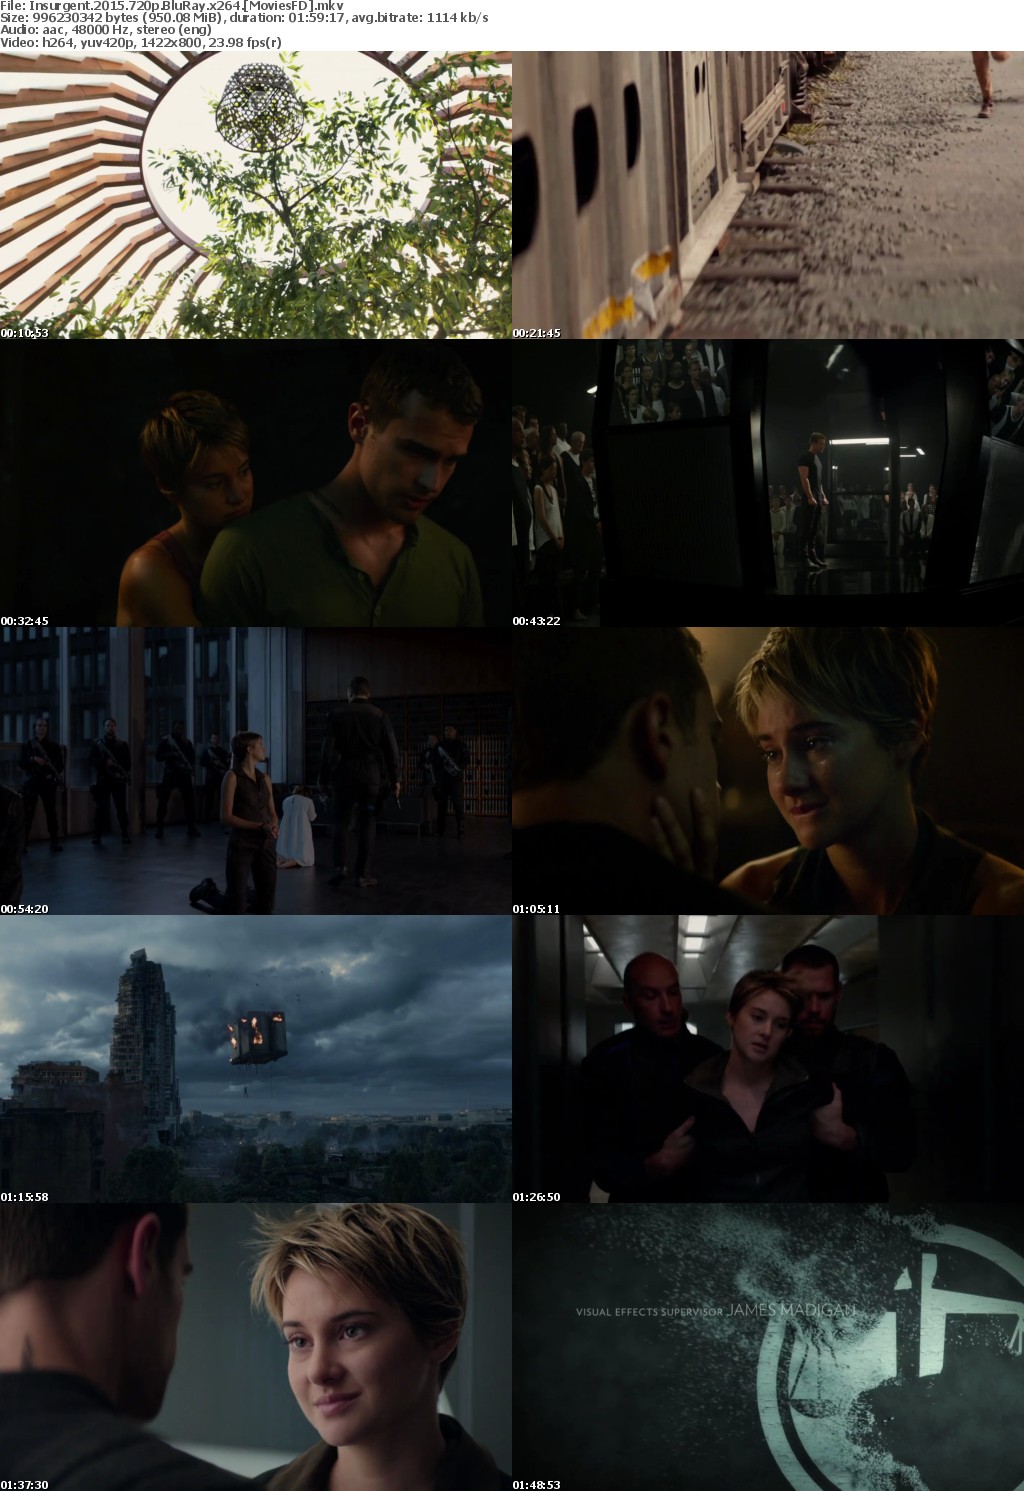 Insurgent (2015) 720p BluRay x264 - Moviesfd